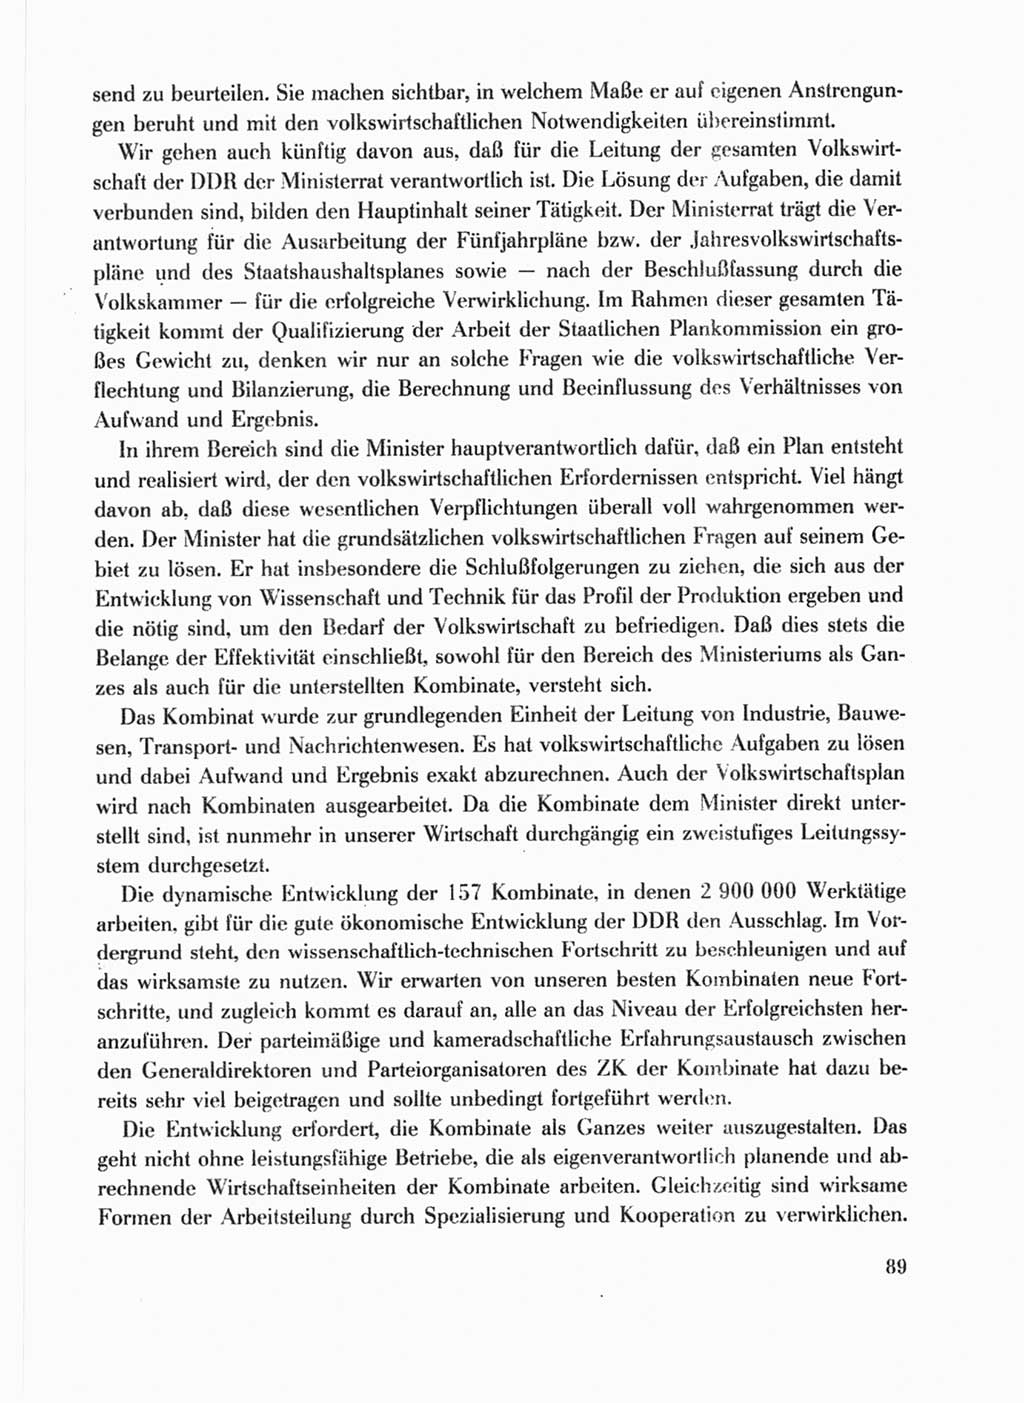 Protokoll der Verhandlungen des Ⅹ. Parteitages der Sozialistischen Einheitspartei Deutschlands (SED) [Deutsche Demokratische Republik (DDR)] 1981, Band 1, Seite 89 (Prot. Verh. Ⅹ. PT SED DDR 1981, Bd. 1, S. 89)